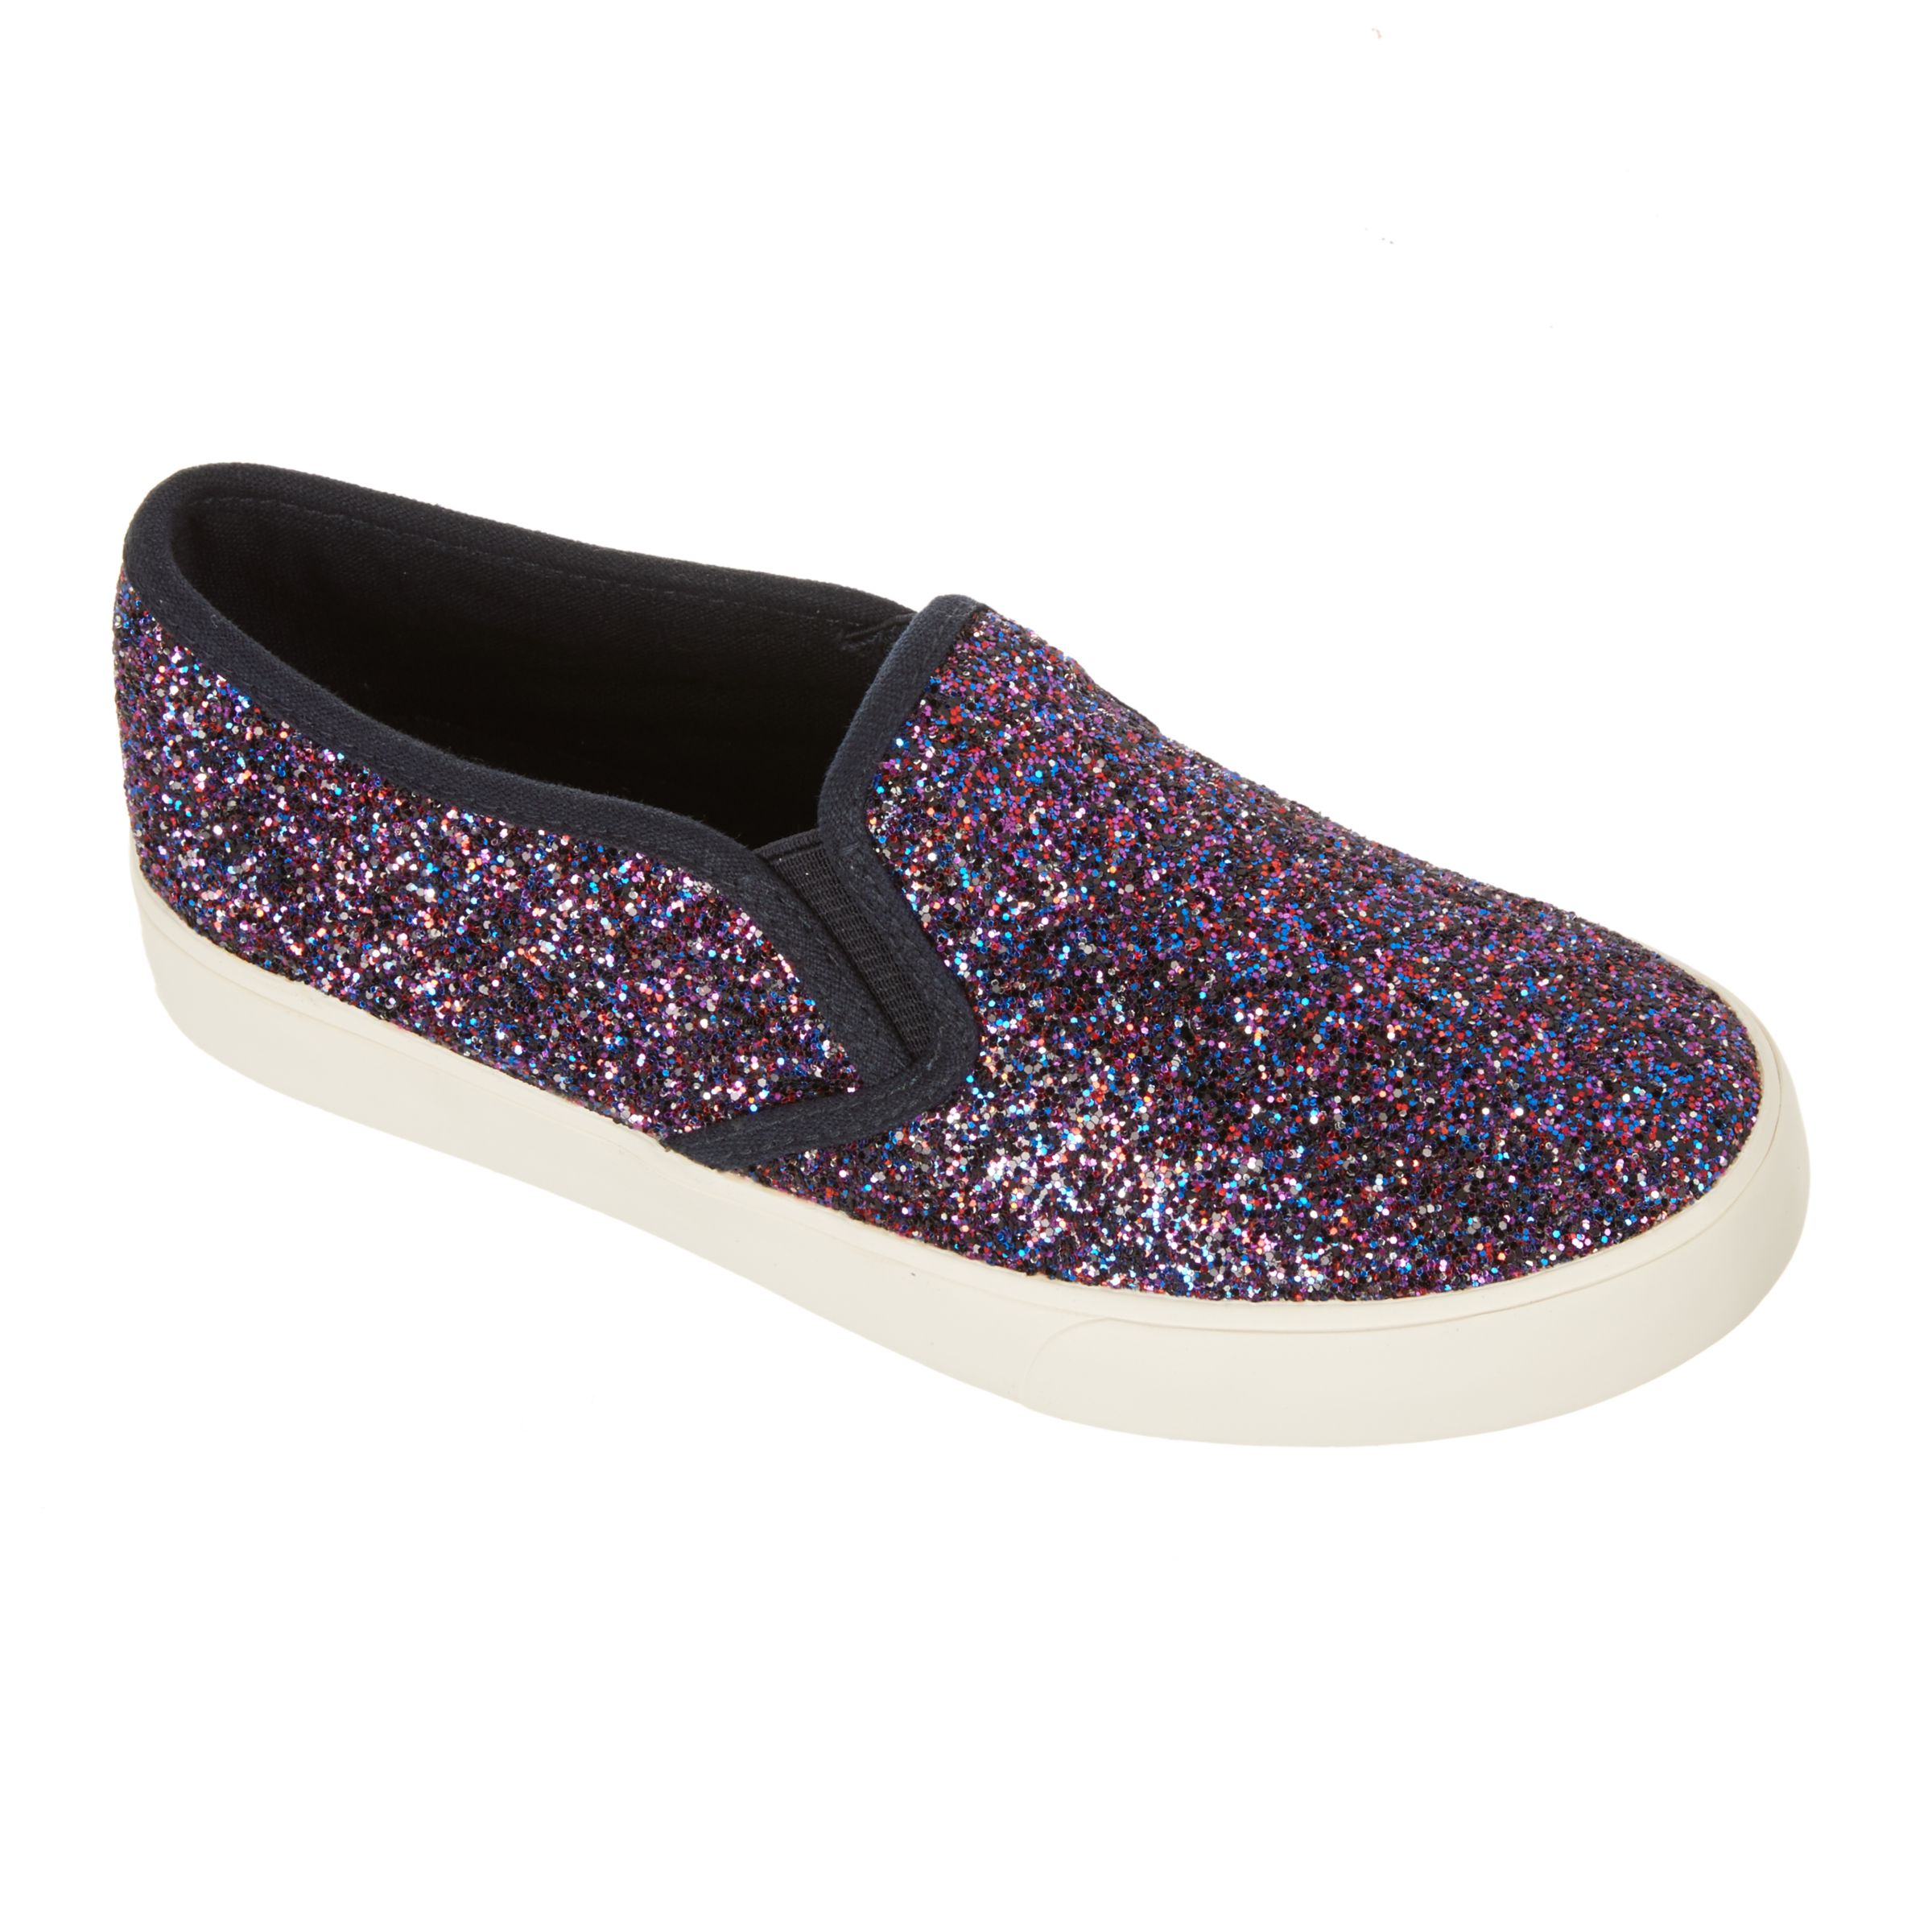 John Lewis & Partners Children's Pheobe Glitter Slip On Shoes, Purple, 5